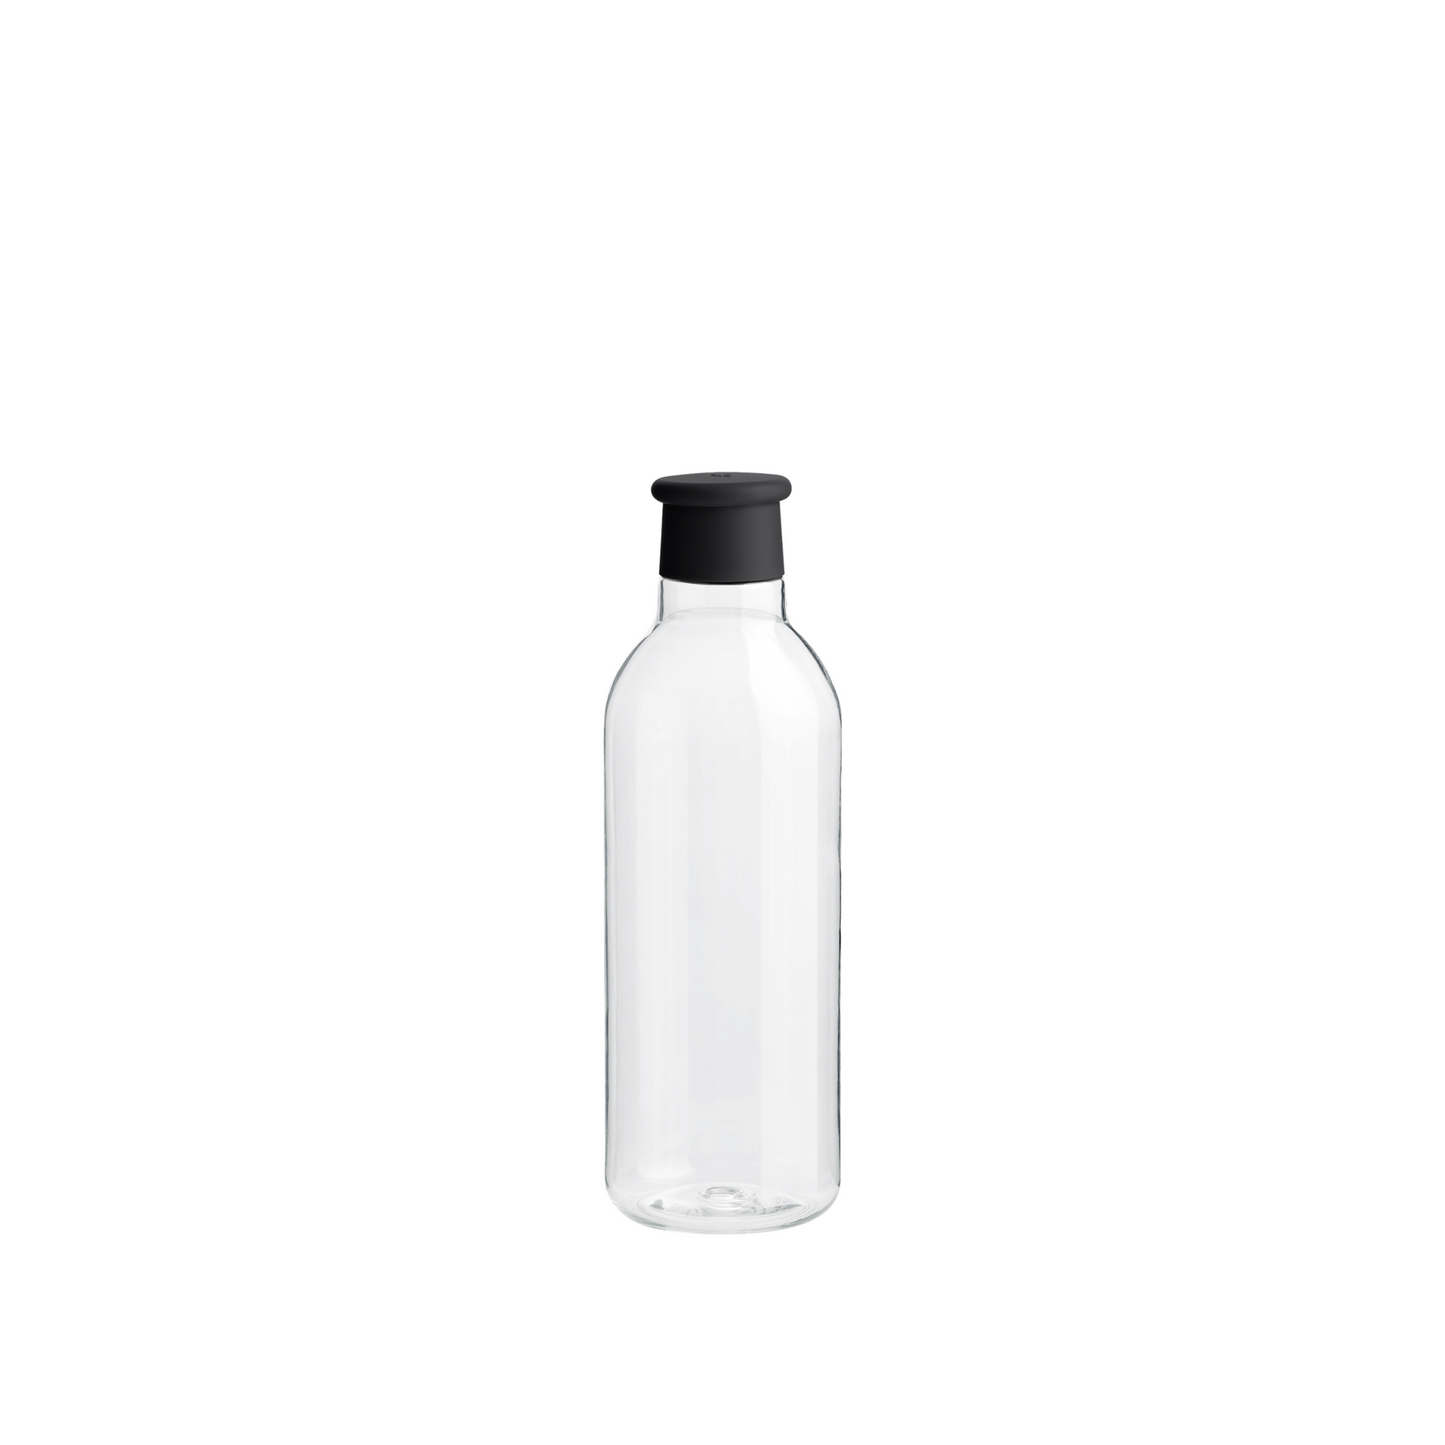 DRINK-IT Drinking Bottle 0.75L | Black